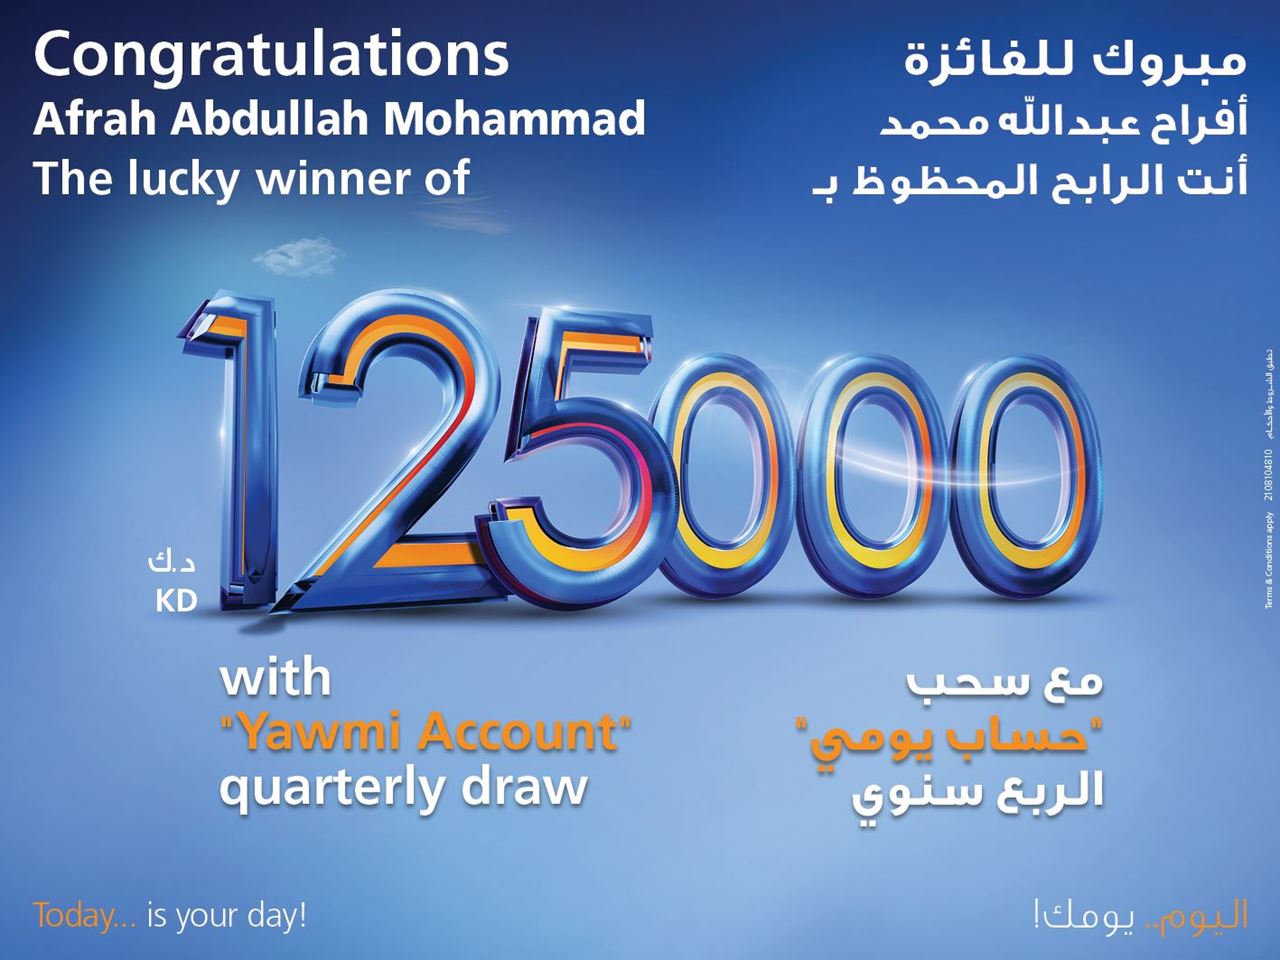 بنك برقان يعلن عن الفائزة الجديدة ب125,000 دينار كويتي في سحب يومي الربع سنوي